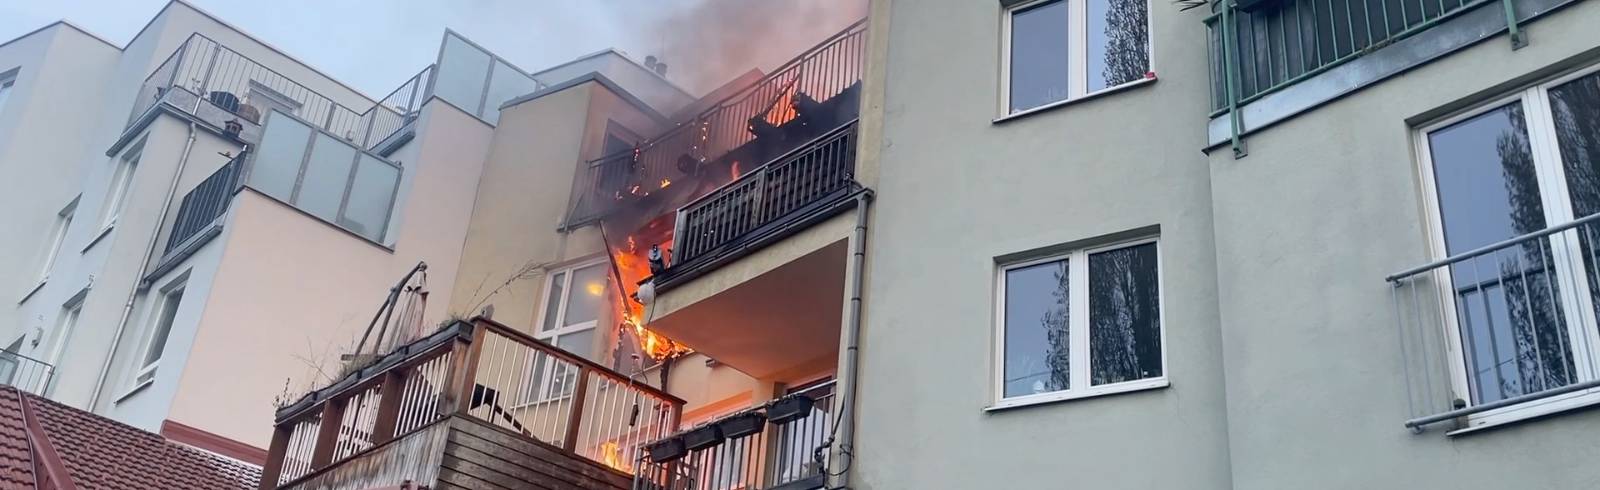 Bezirksflash: Wohnungsbrand in Penzing